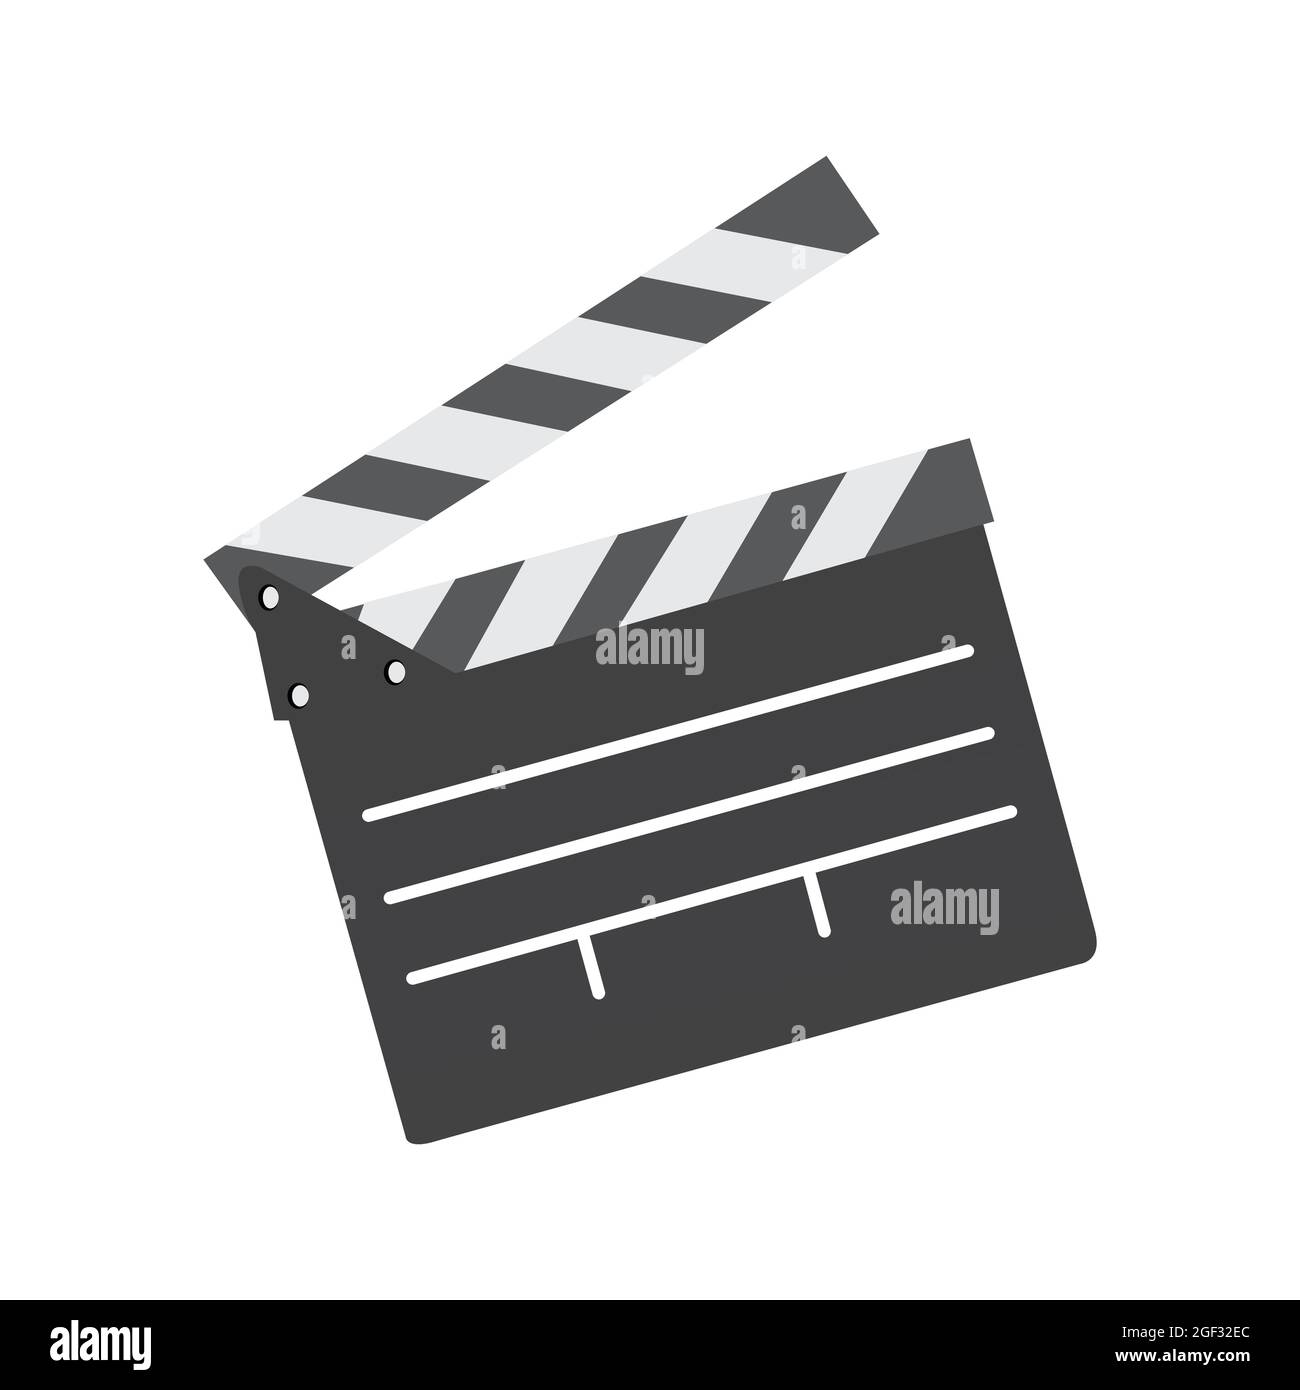 Clap board utilizzato da film o film maker. Vettore clap board isolato. Illustrazione Vettoriale